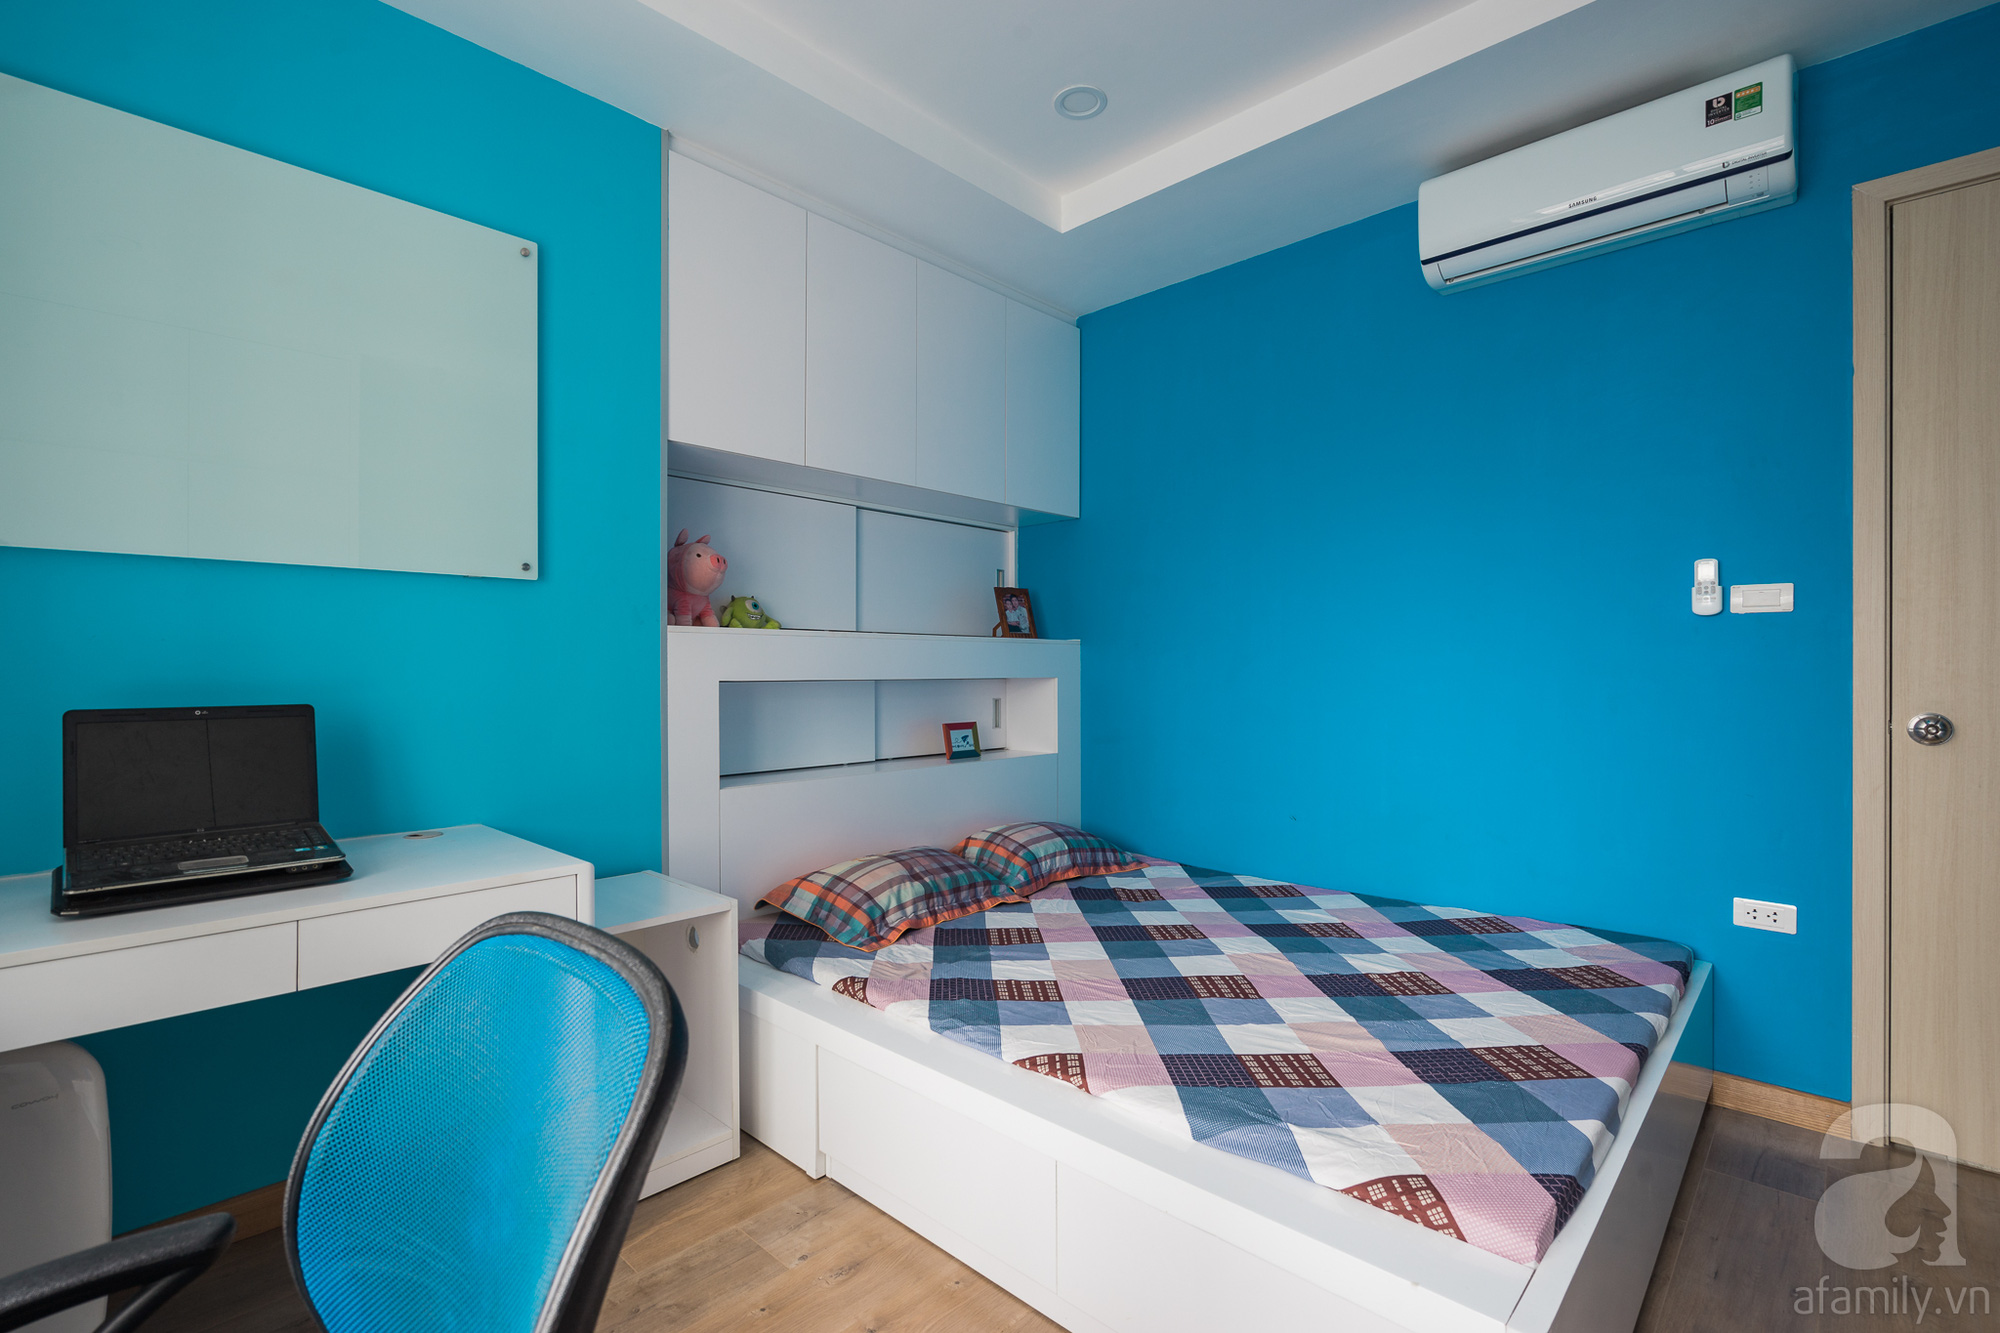 Tư vấn thiết kế căn hộ 110m2 với 3 phòng ngủ tiện nghi ở chung cư Ecolife, Tây Hồ với chi phí hoàn thiện nội thất 290 triệu - Ảnh 23.